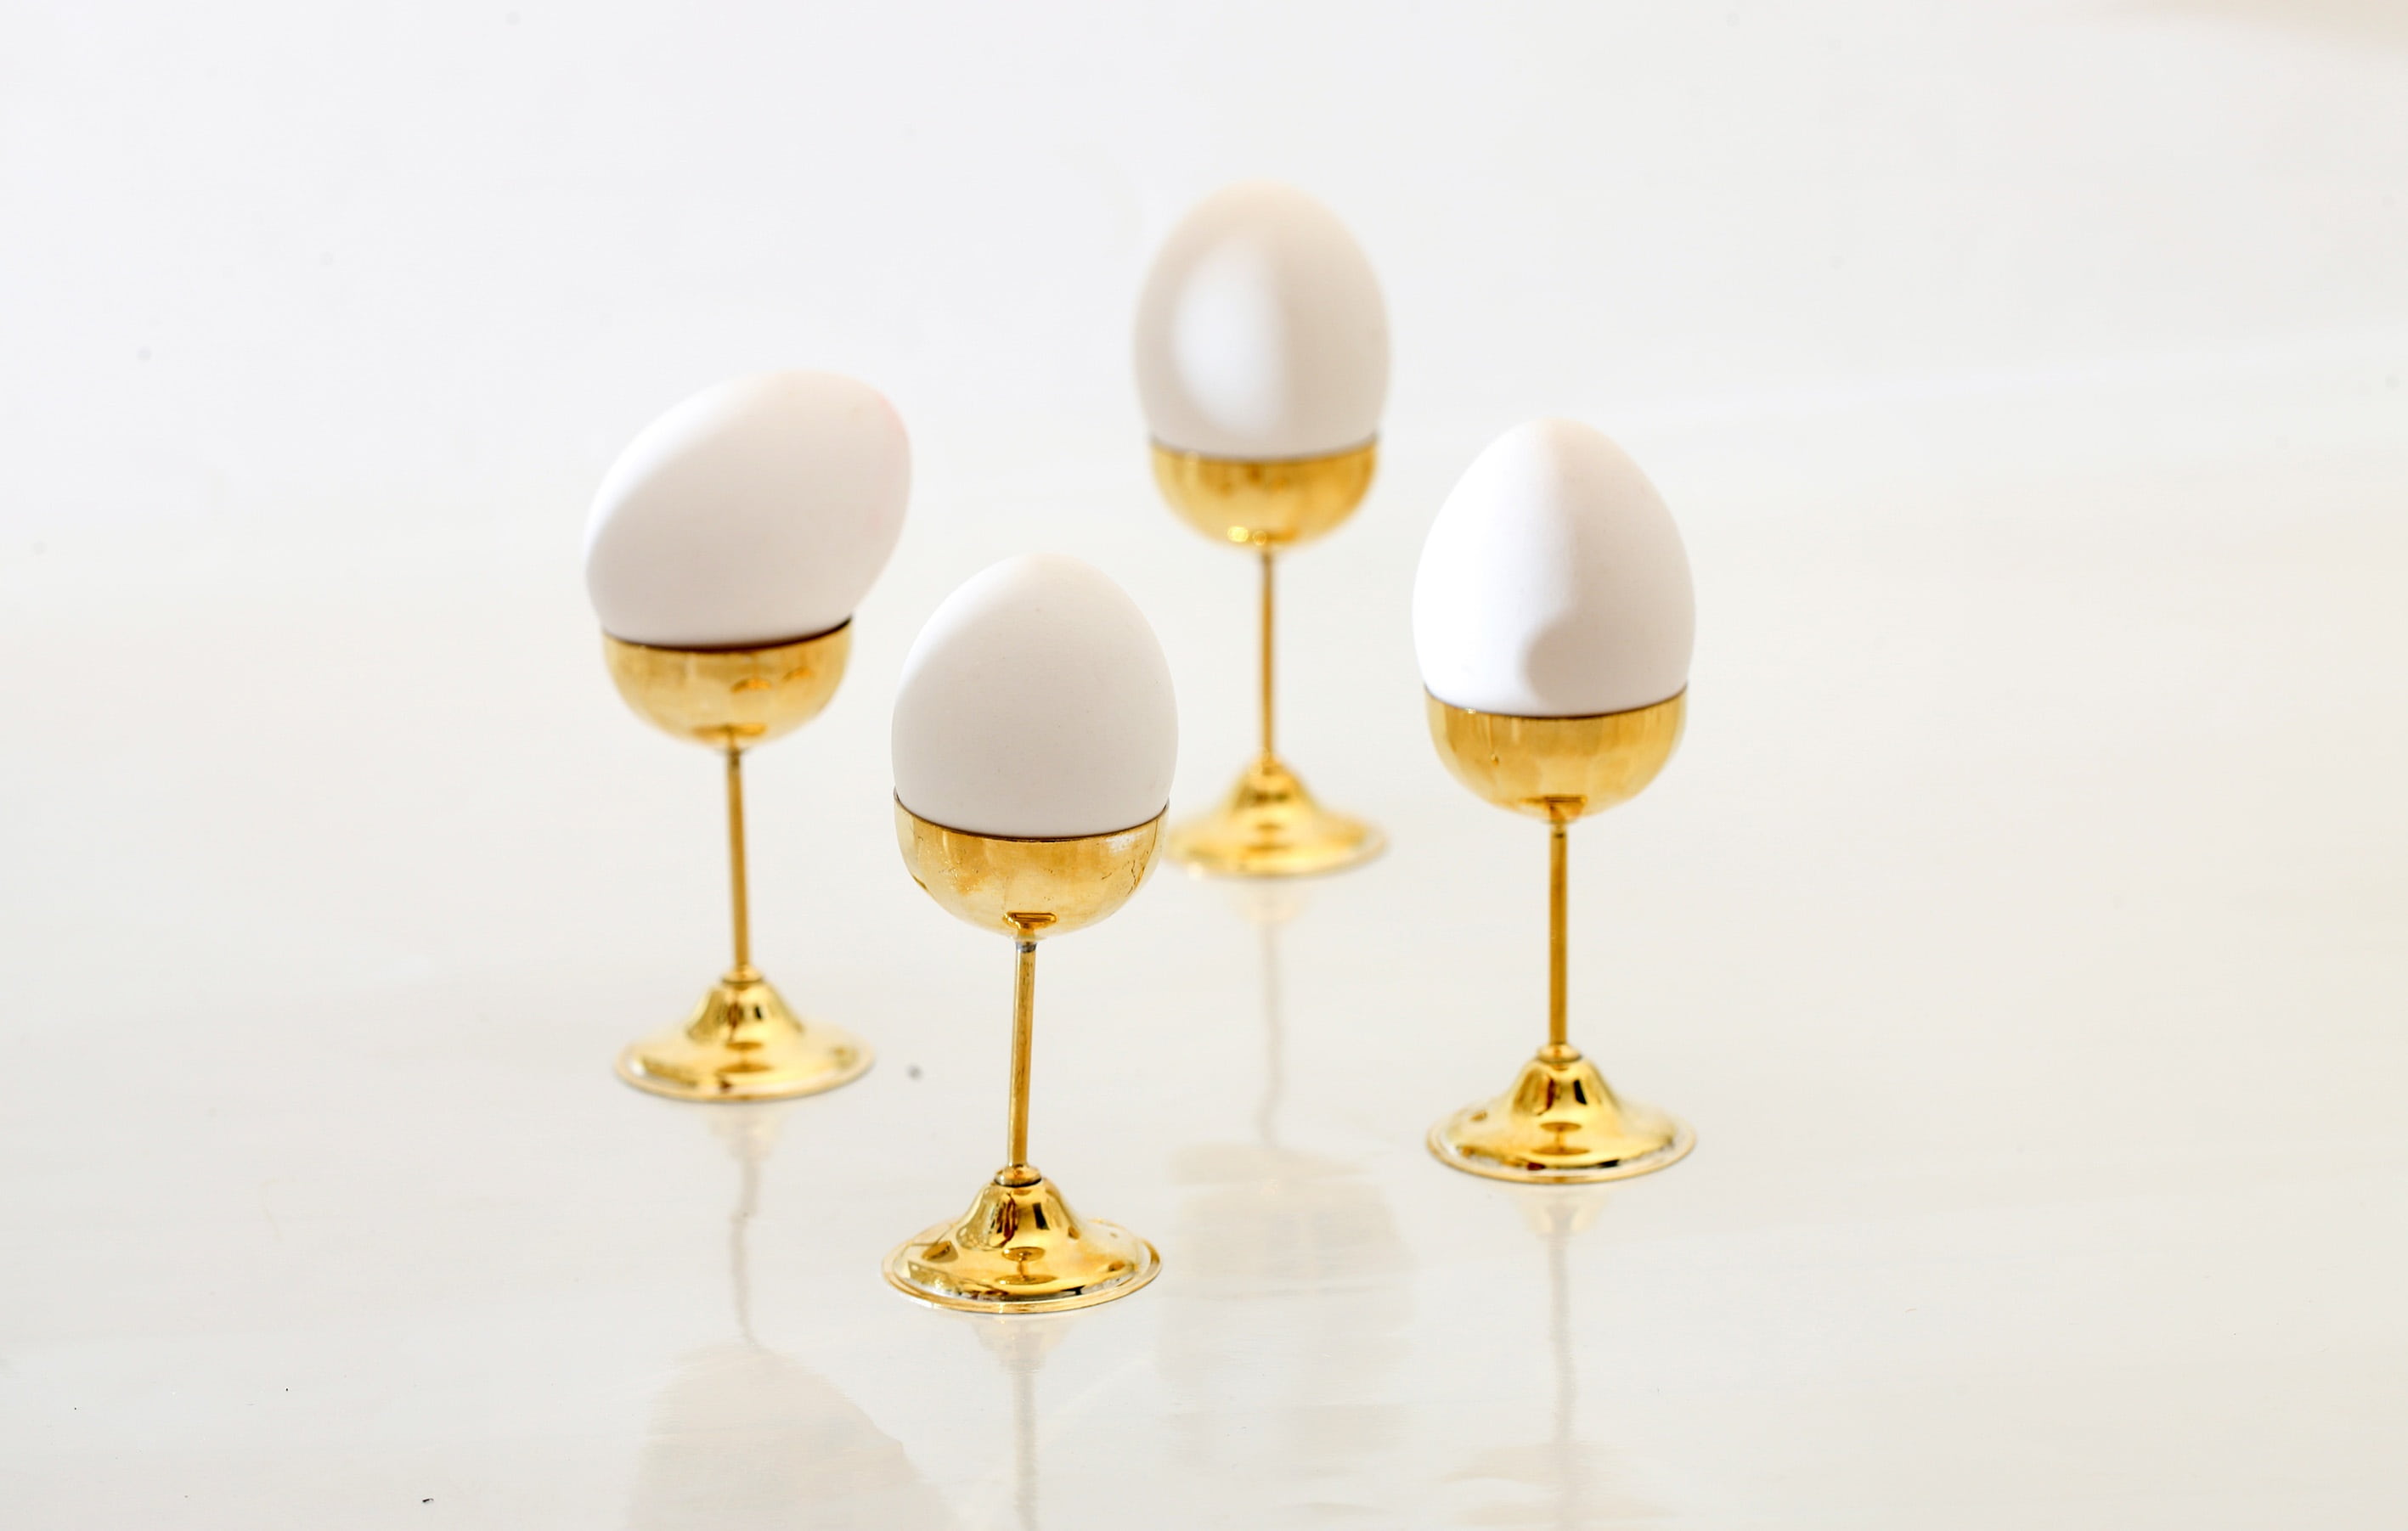 egg, pedestal, egg stand, golden, gilt, egg cup, vintage, studio shot